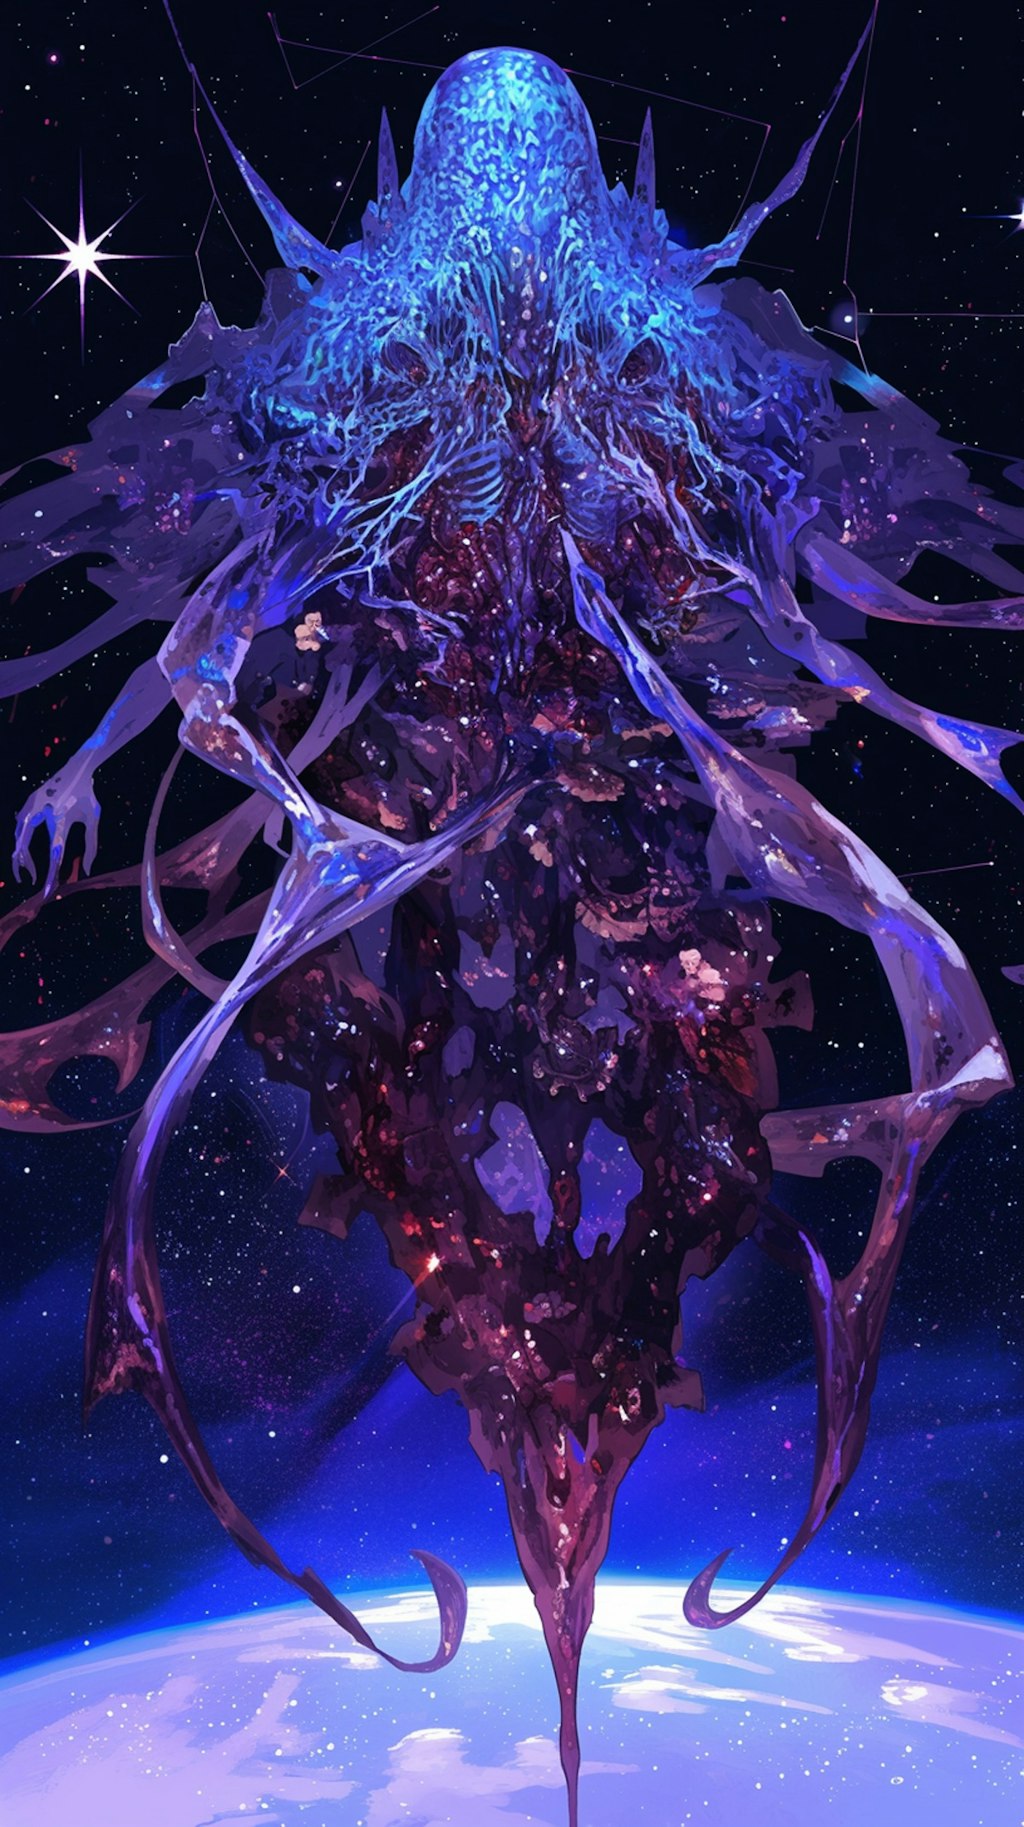 血管と骸骨のスライム巨人(銀河)１